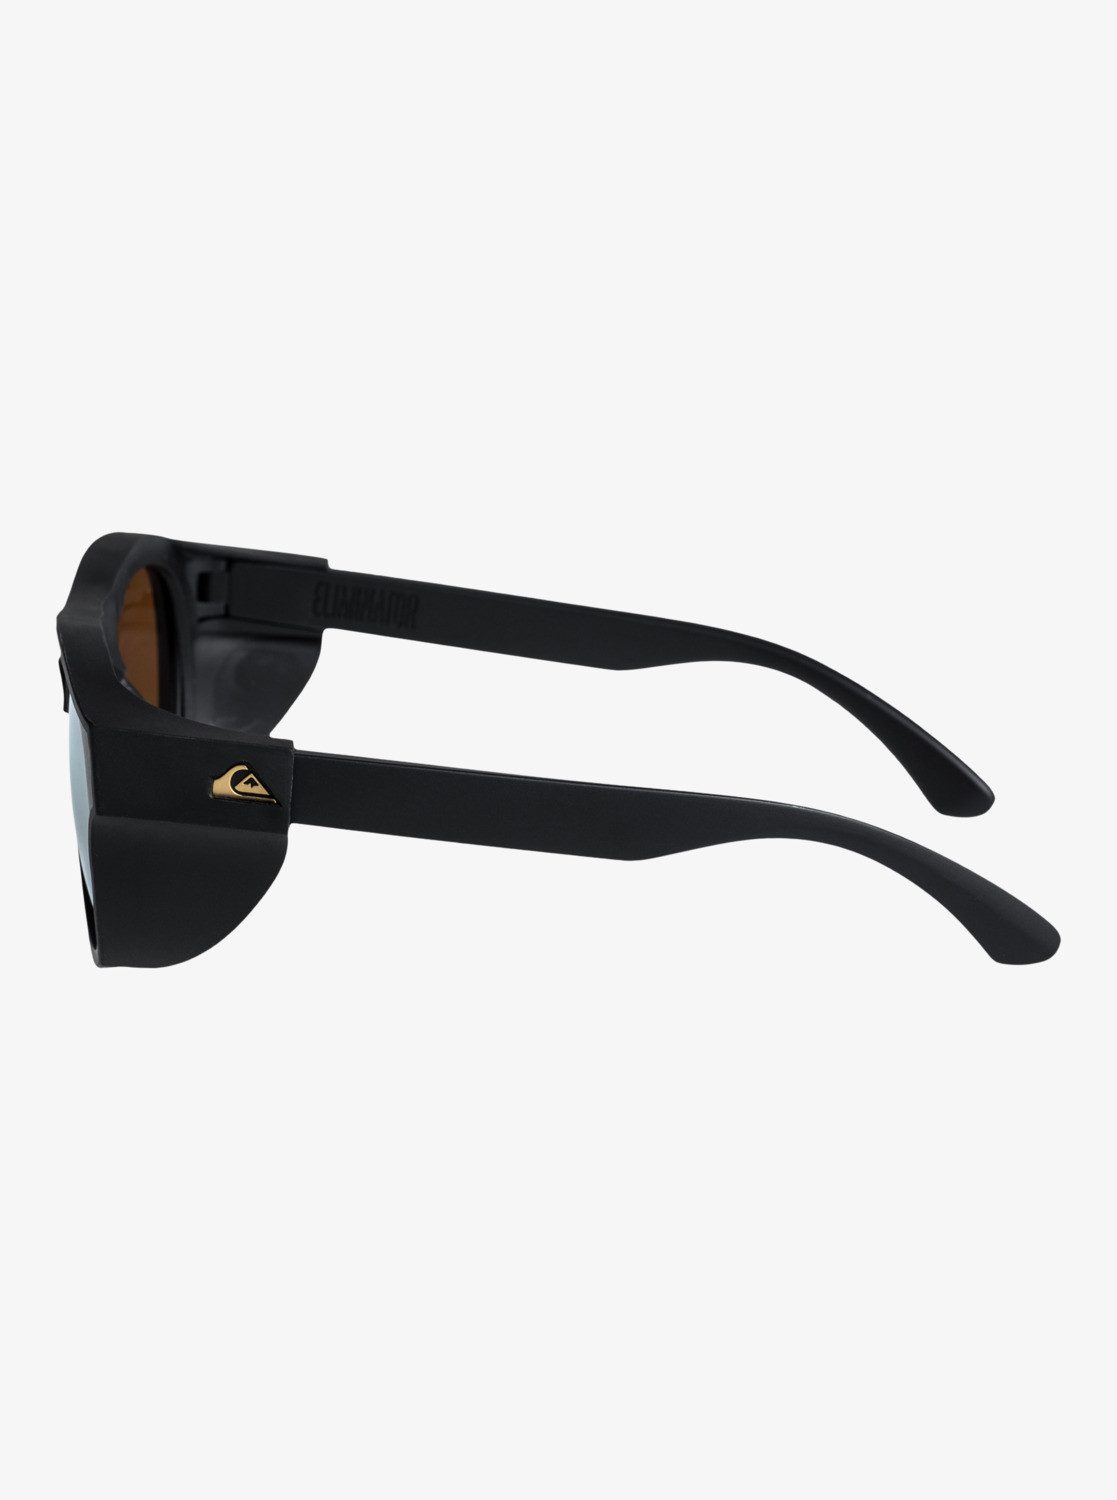 Sonnenbrille Eliminator+ Black/Flash Gold Quiksilver